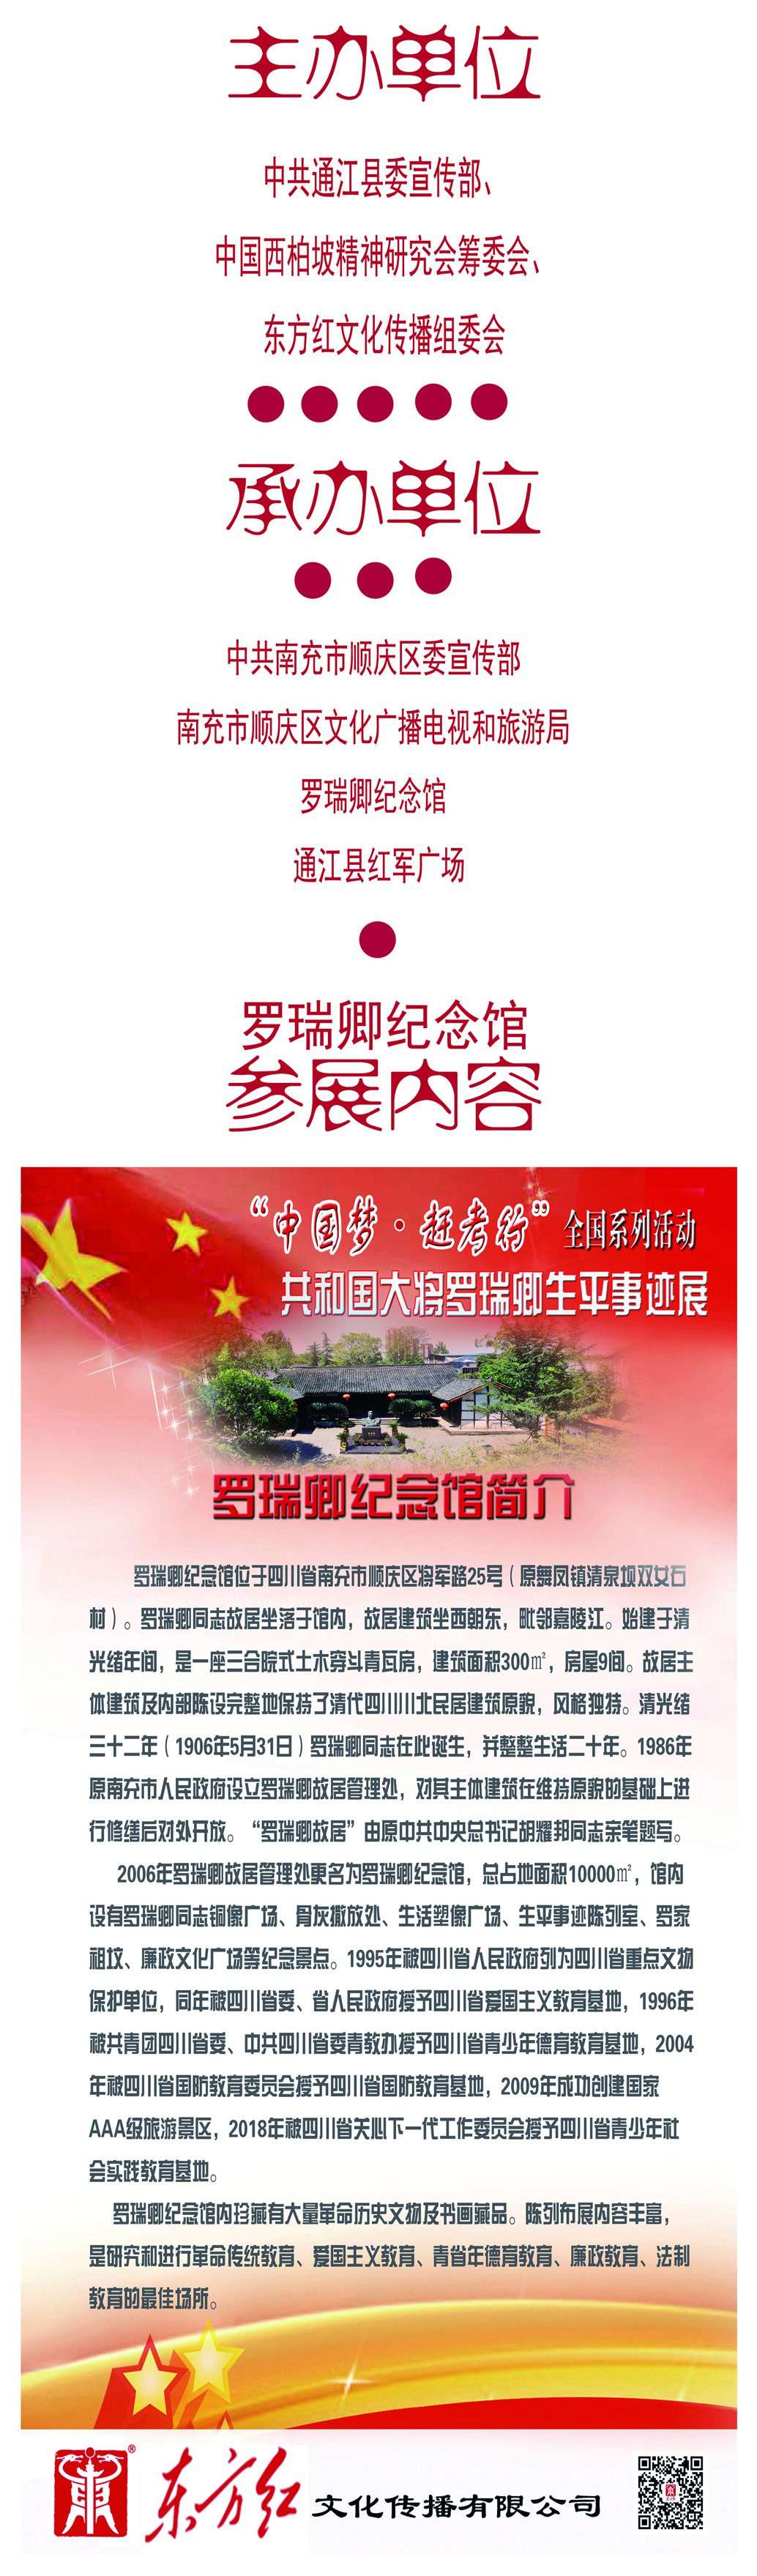 罗瑞卿纪念馆参与承办的“中国梦.赶考行”在通江县开展